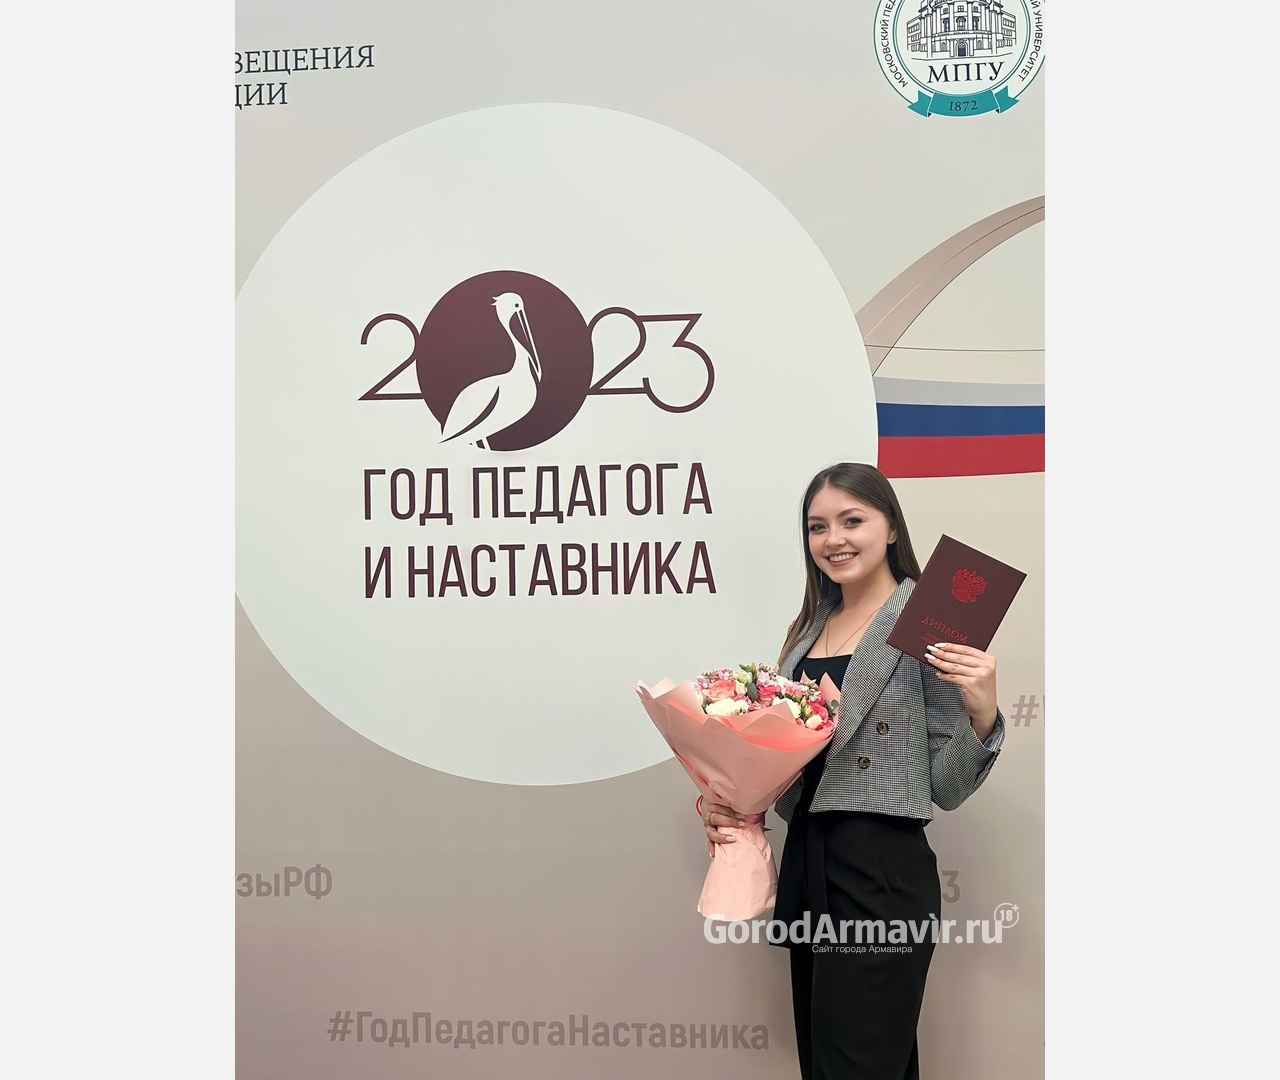 Выпускница АГПУ Диана Трофименко получила диплом с отличием из рук Татьяны Голиковой и Сергея Кравцова